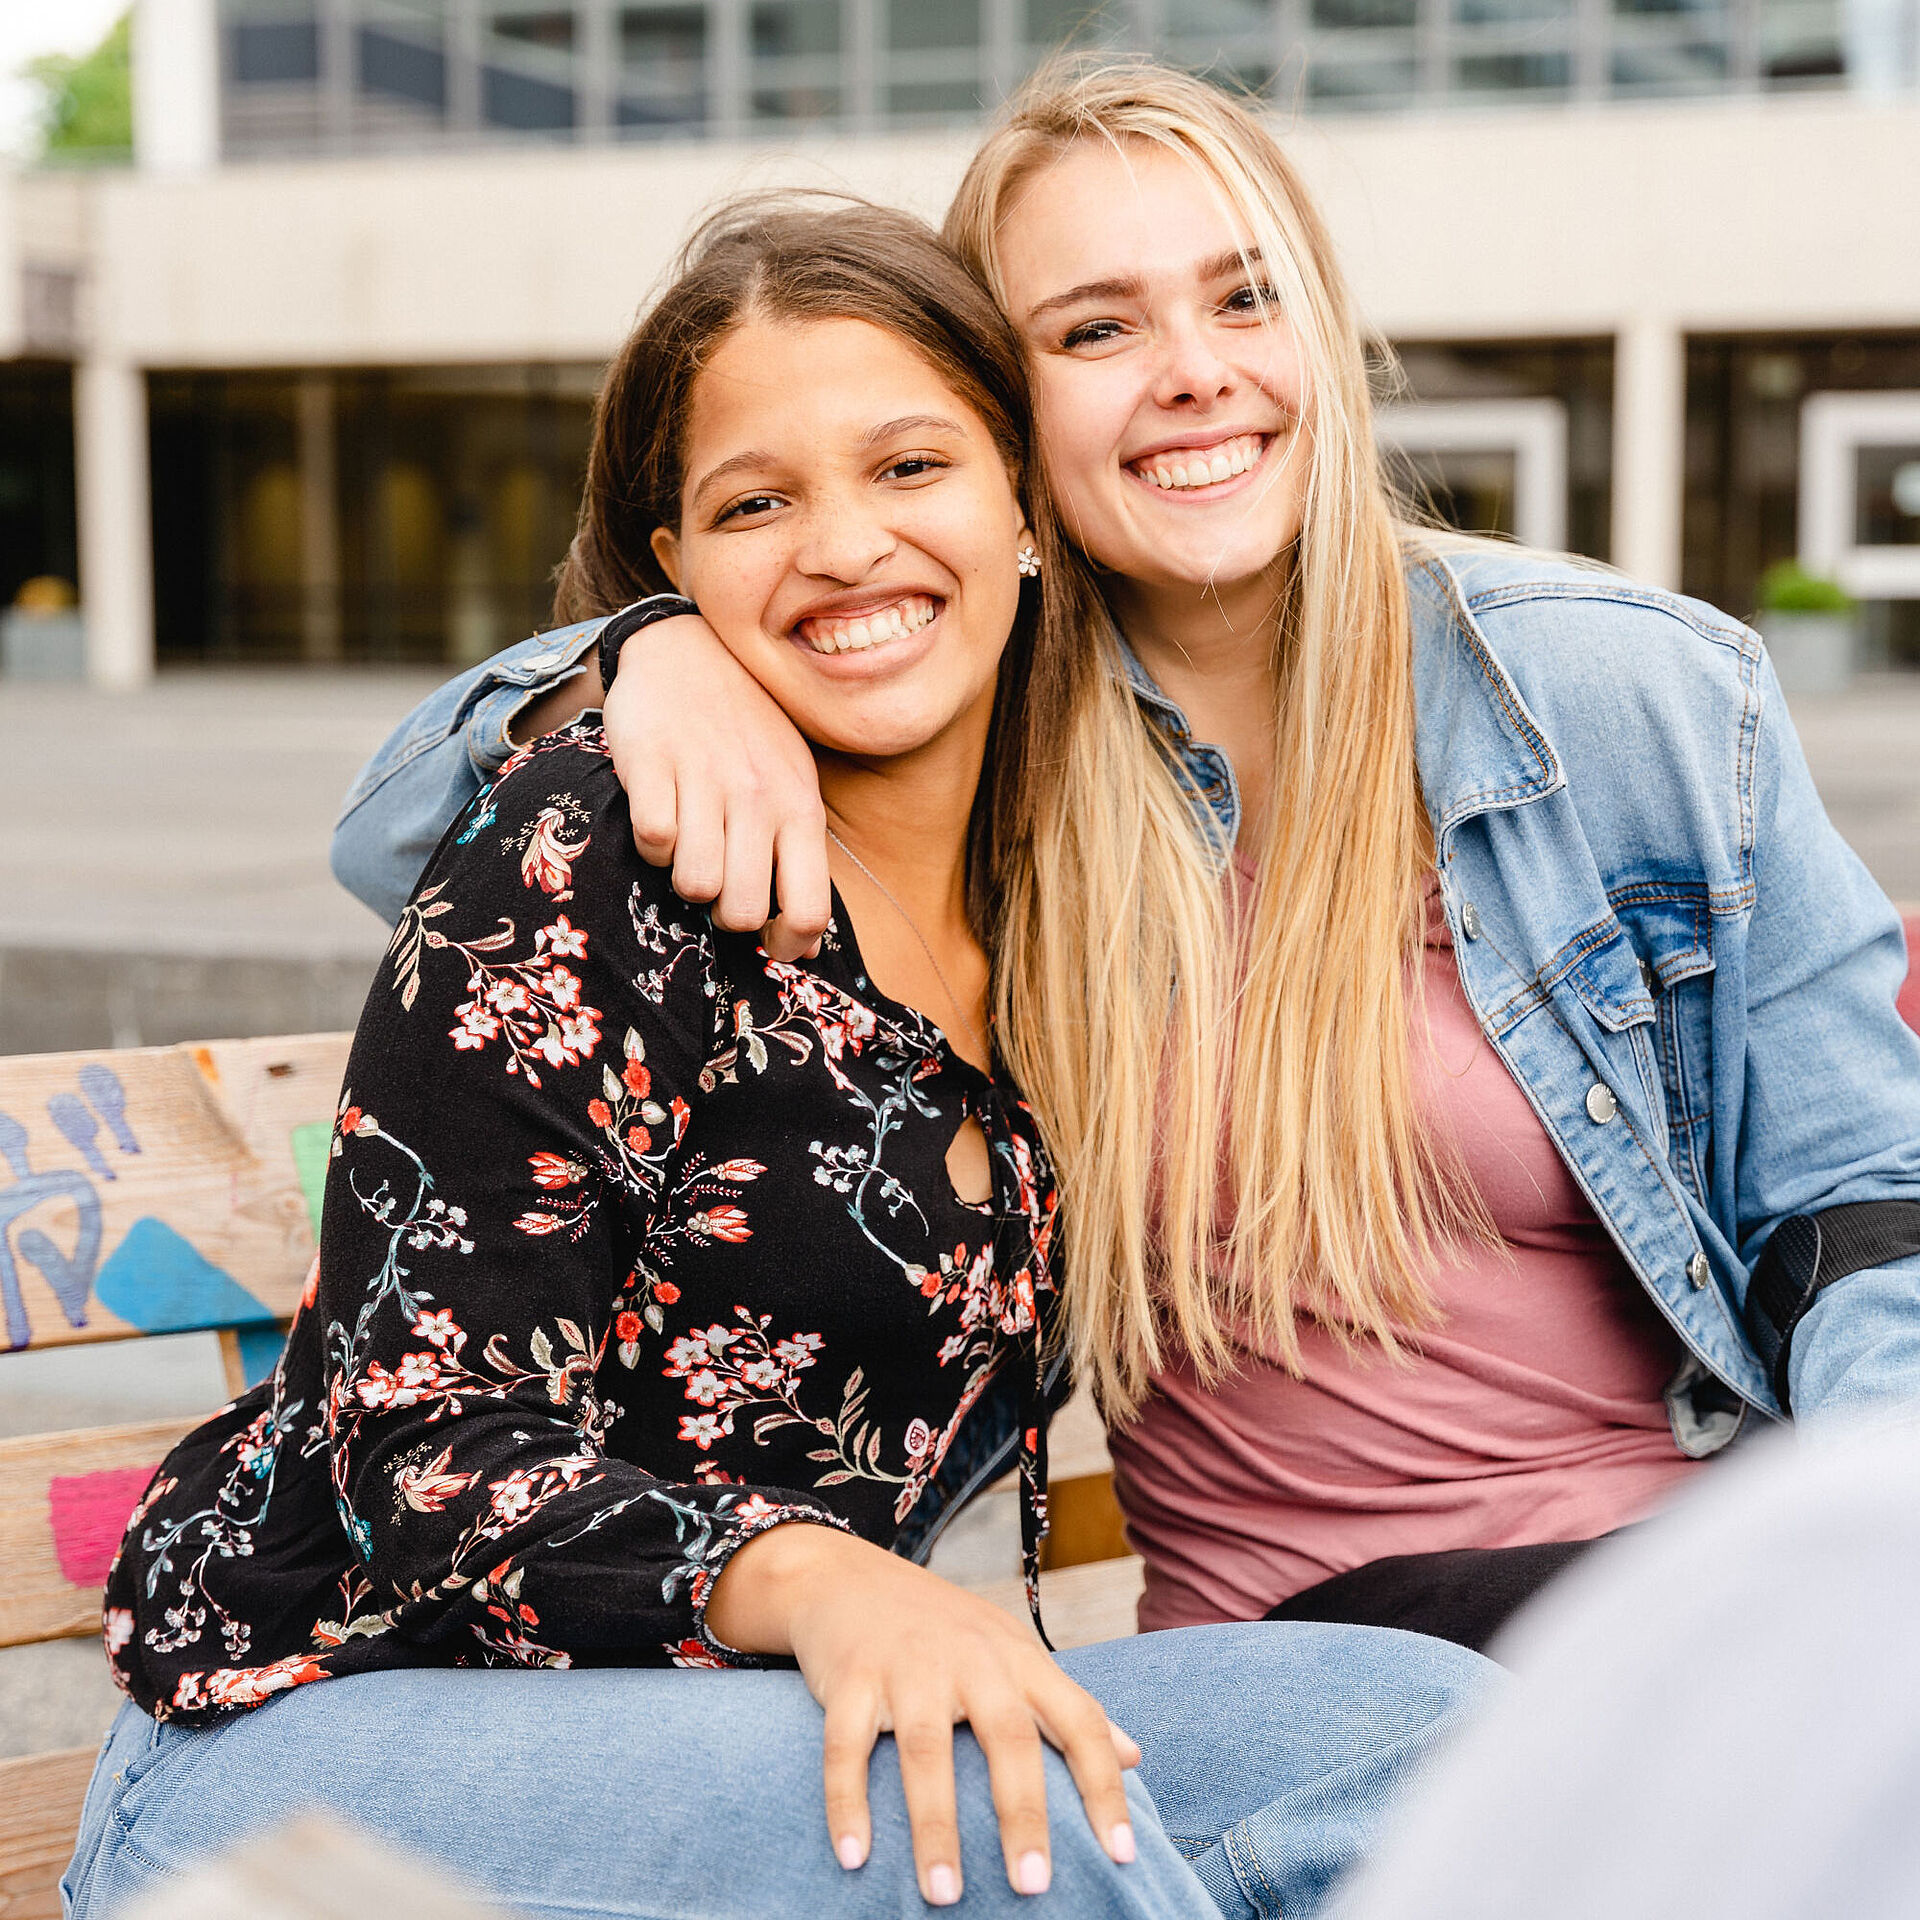 Zwei Studentinnen sitzen auf dem Universitätsplatz und umarmen sich freundschaftlich.